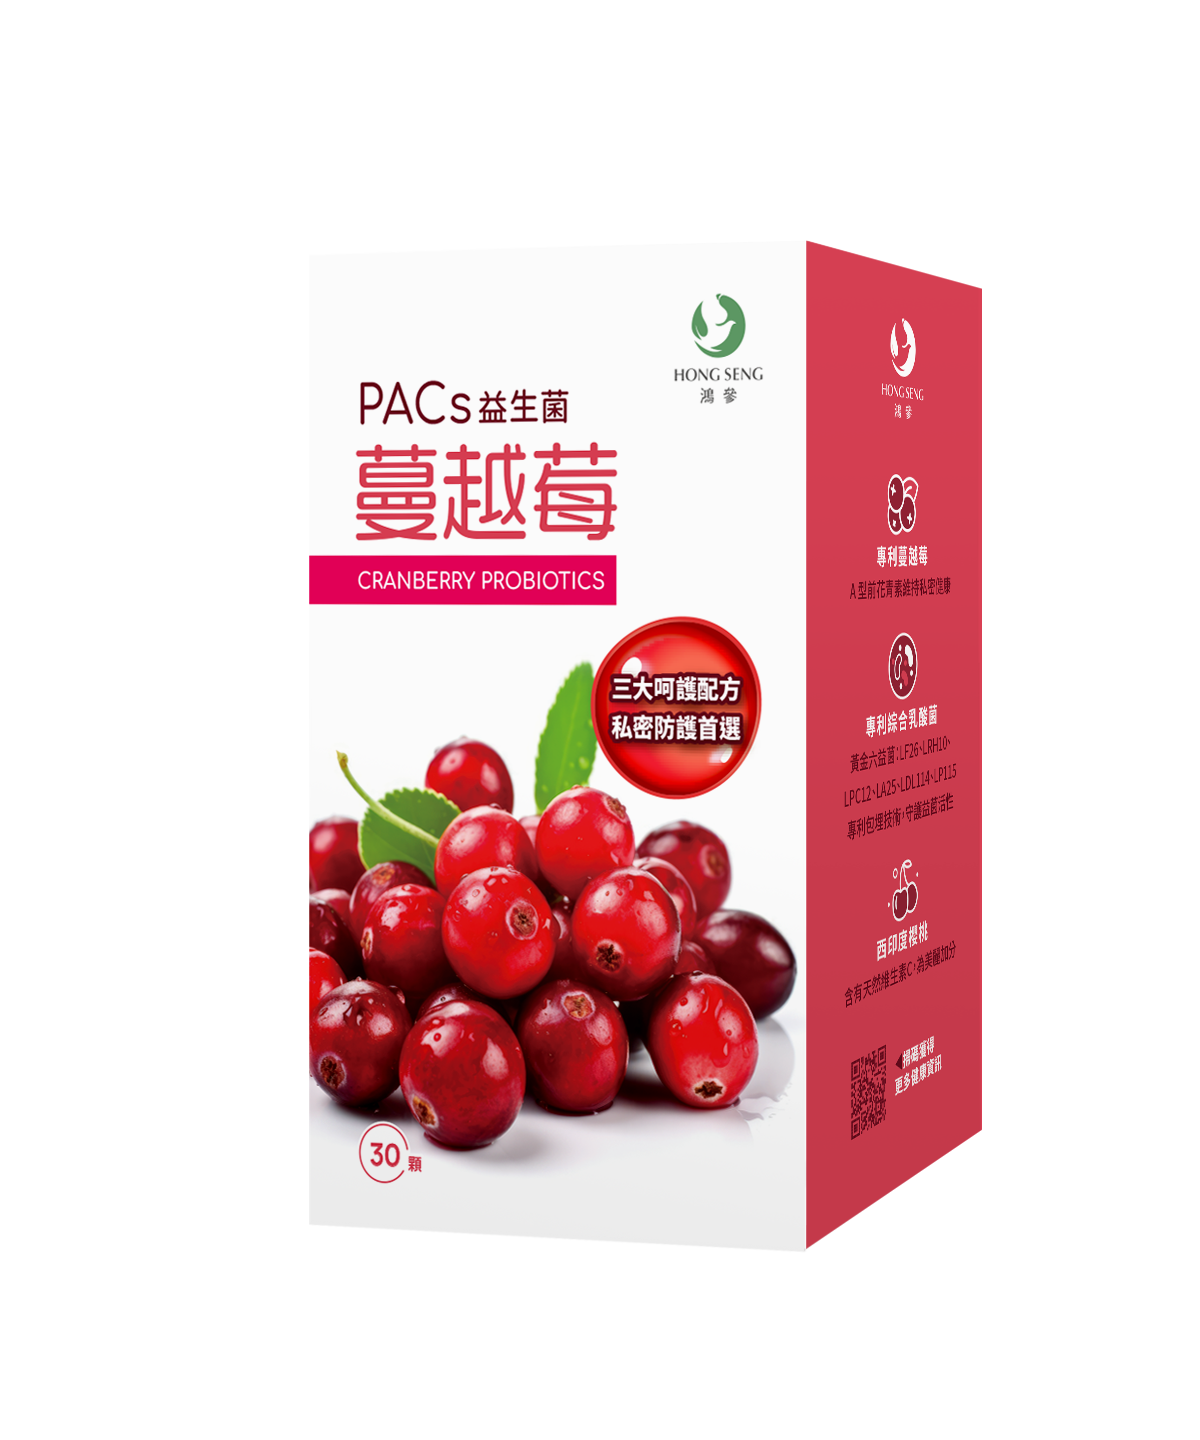 ⚡三入特惠75折⚡【鴻參】PACs蔓越莓益生菌 (30粒/瓶) x3入組